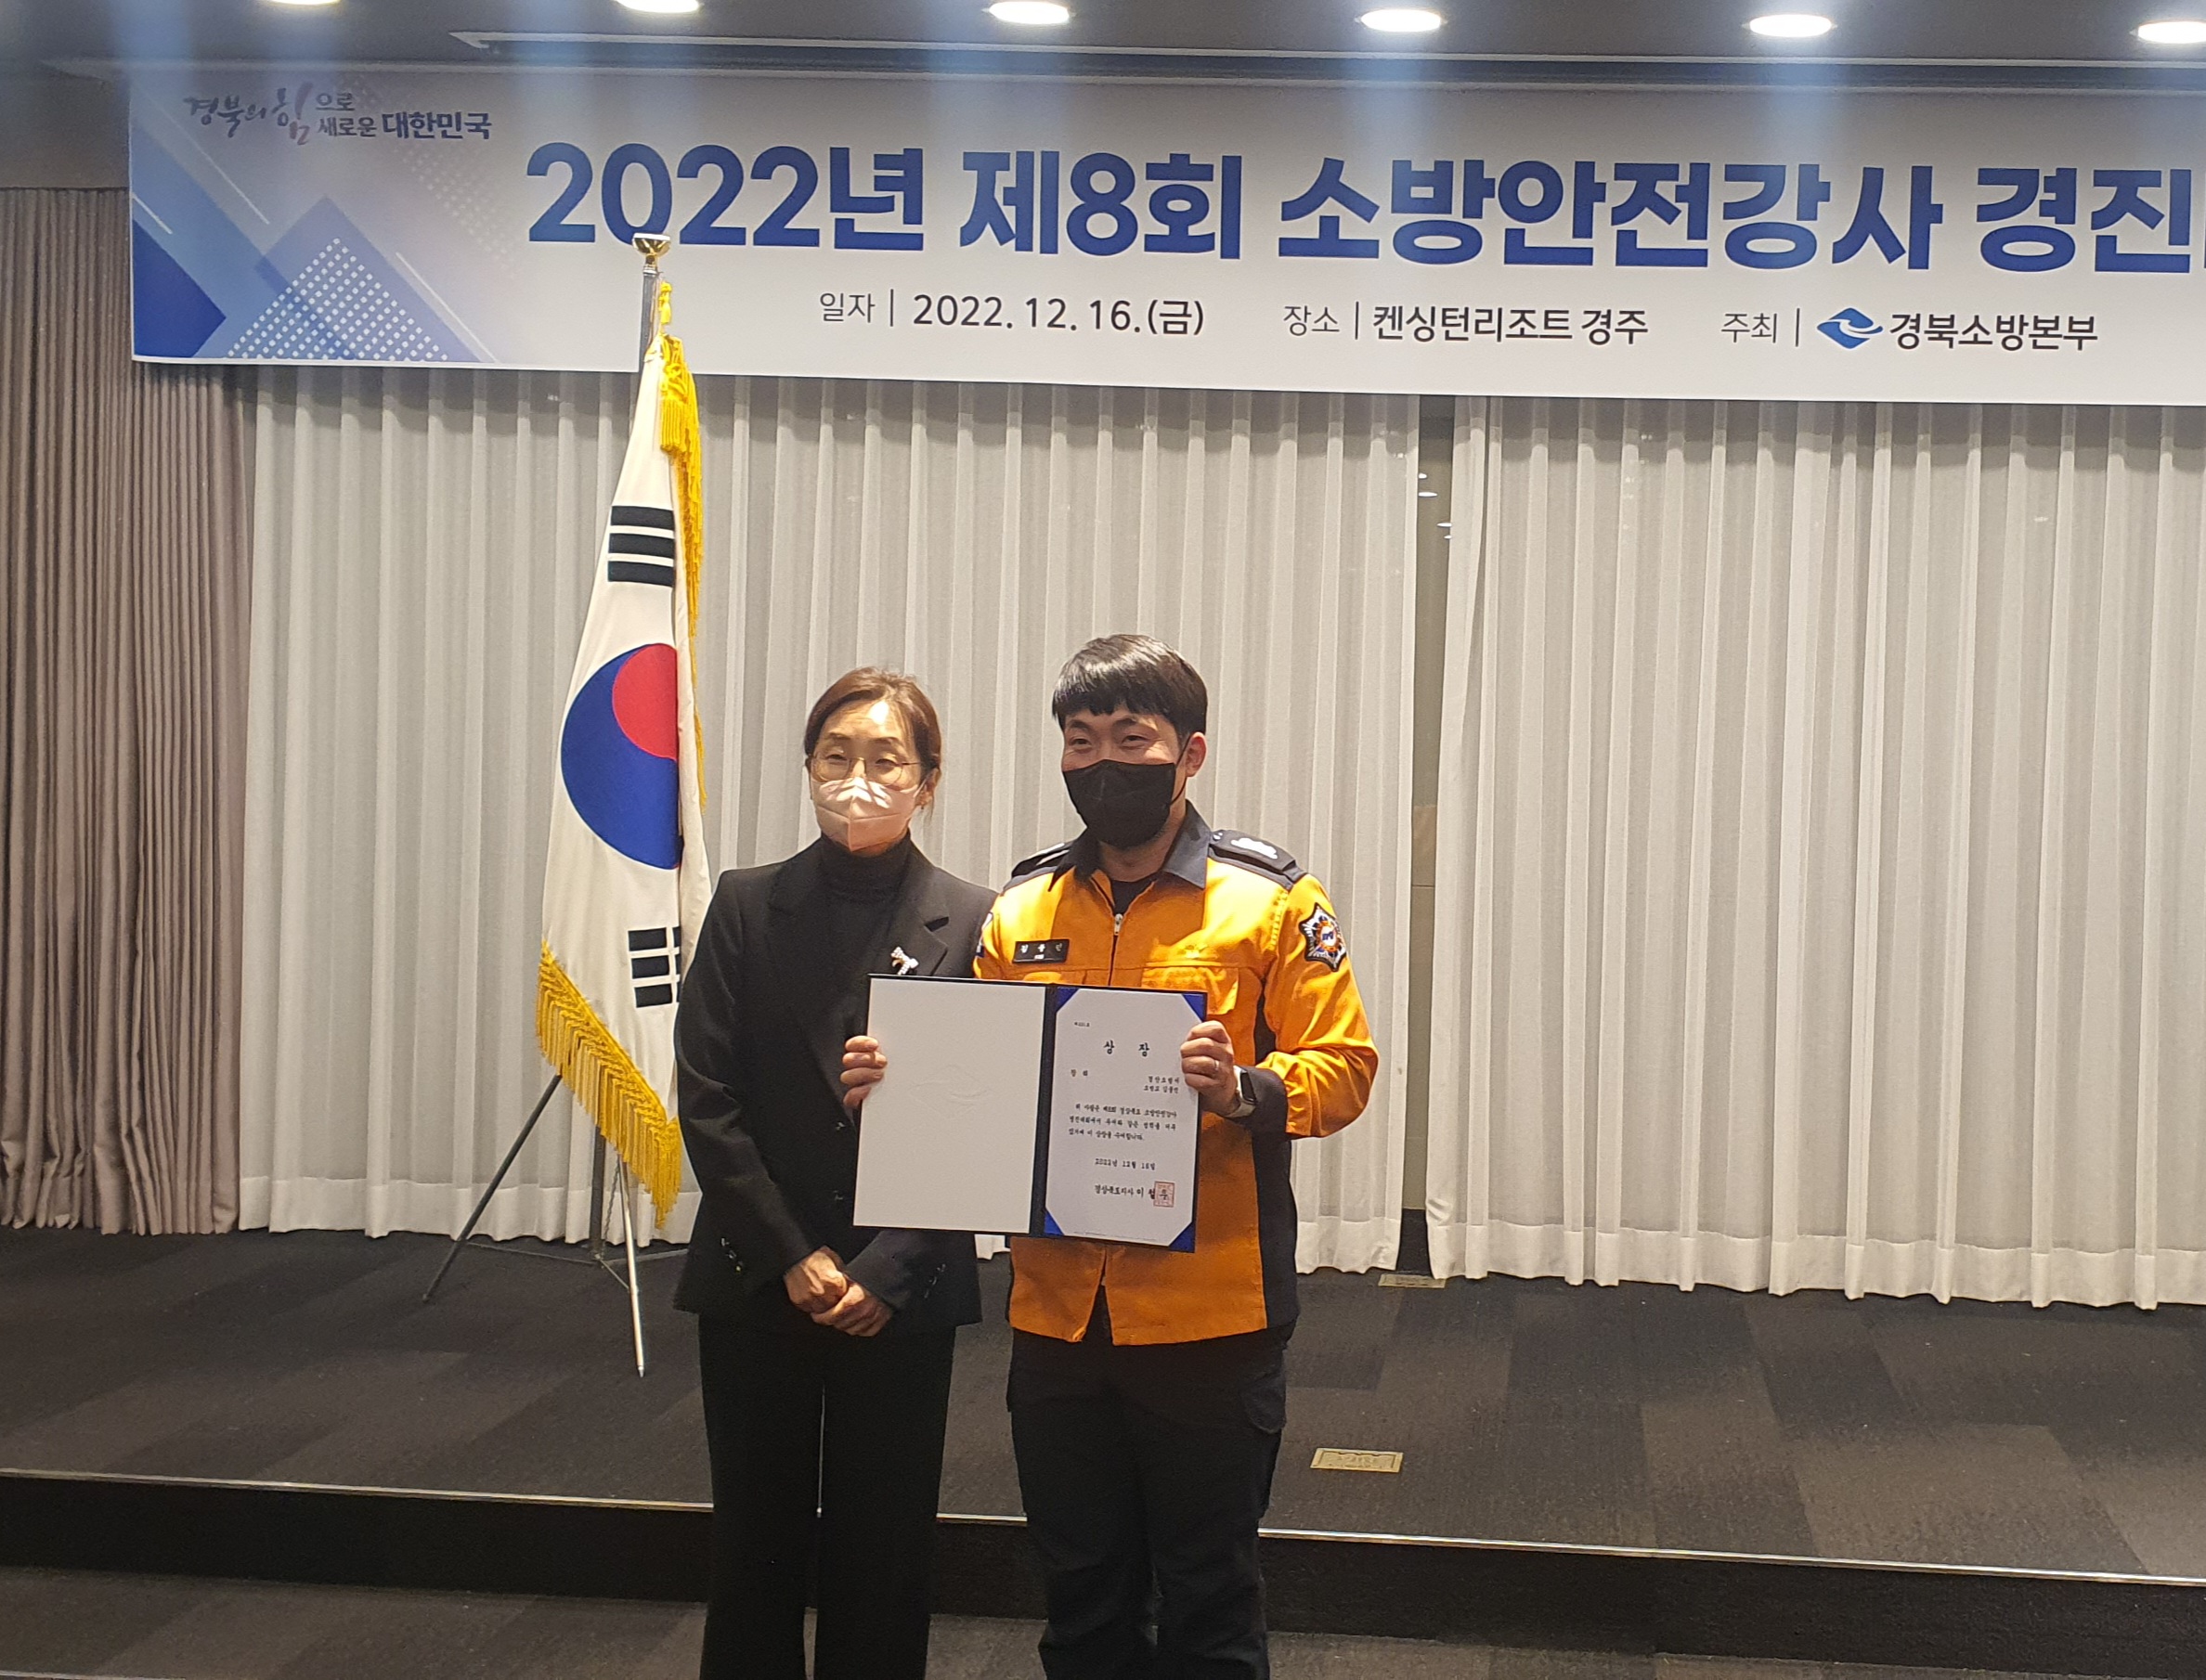 2022년 제8회 소방안전강사 경진대회 장려상 수상